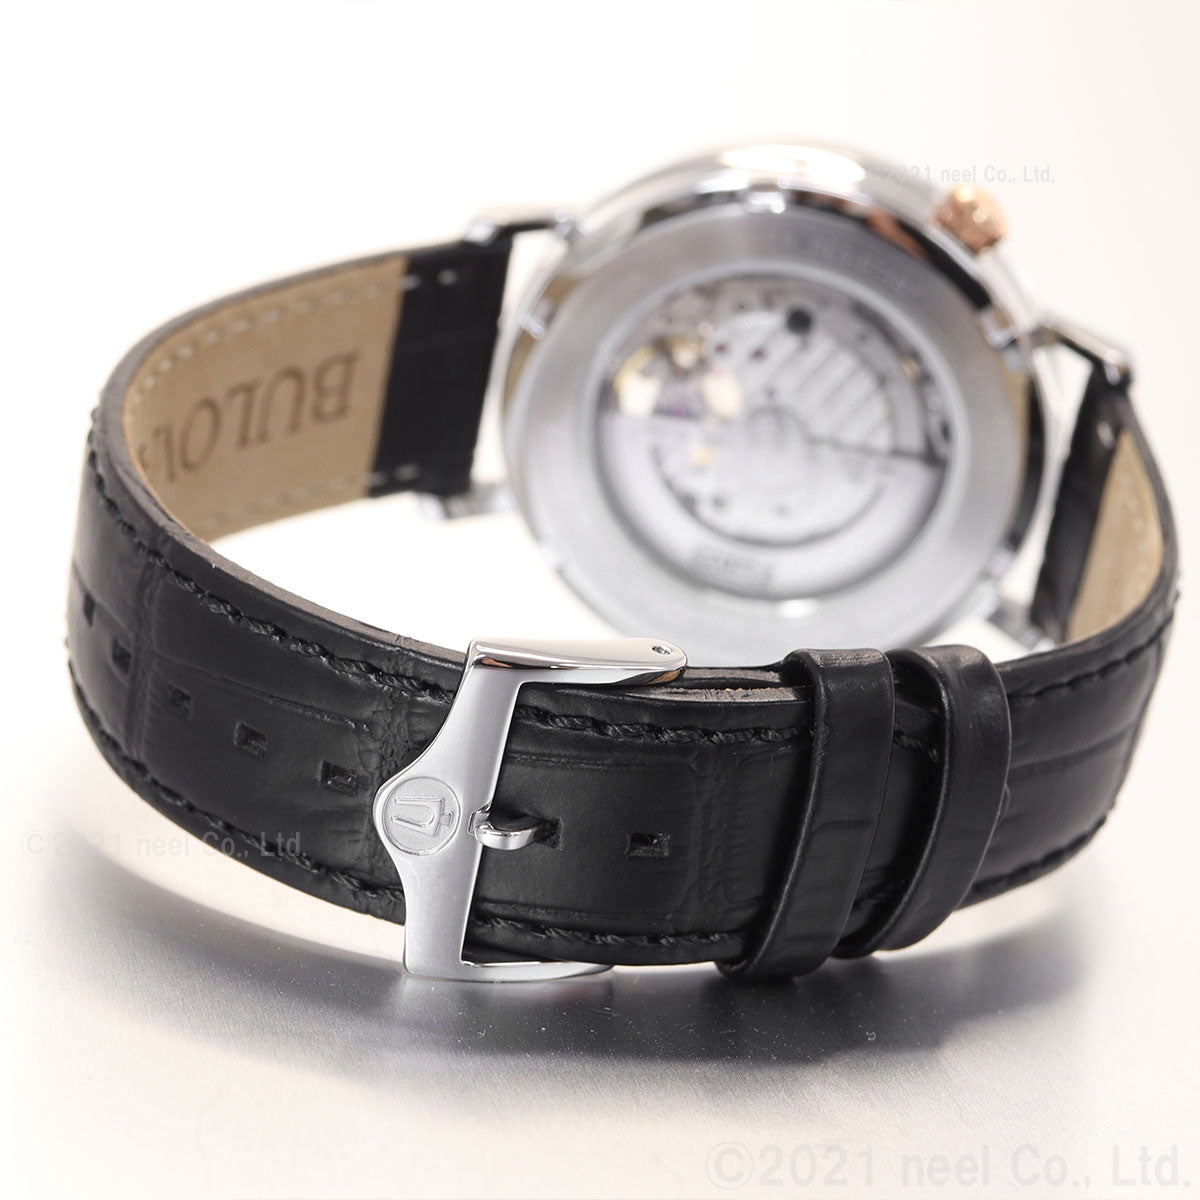 ブローバ BULOVA 腕時計 メンズ 自動巻き メカニカル クラシック Classic 98A289